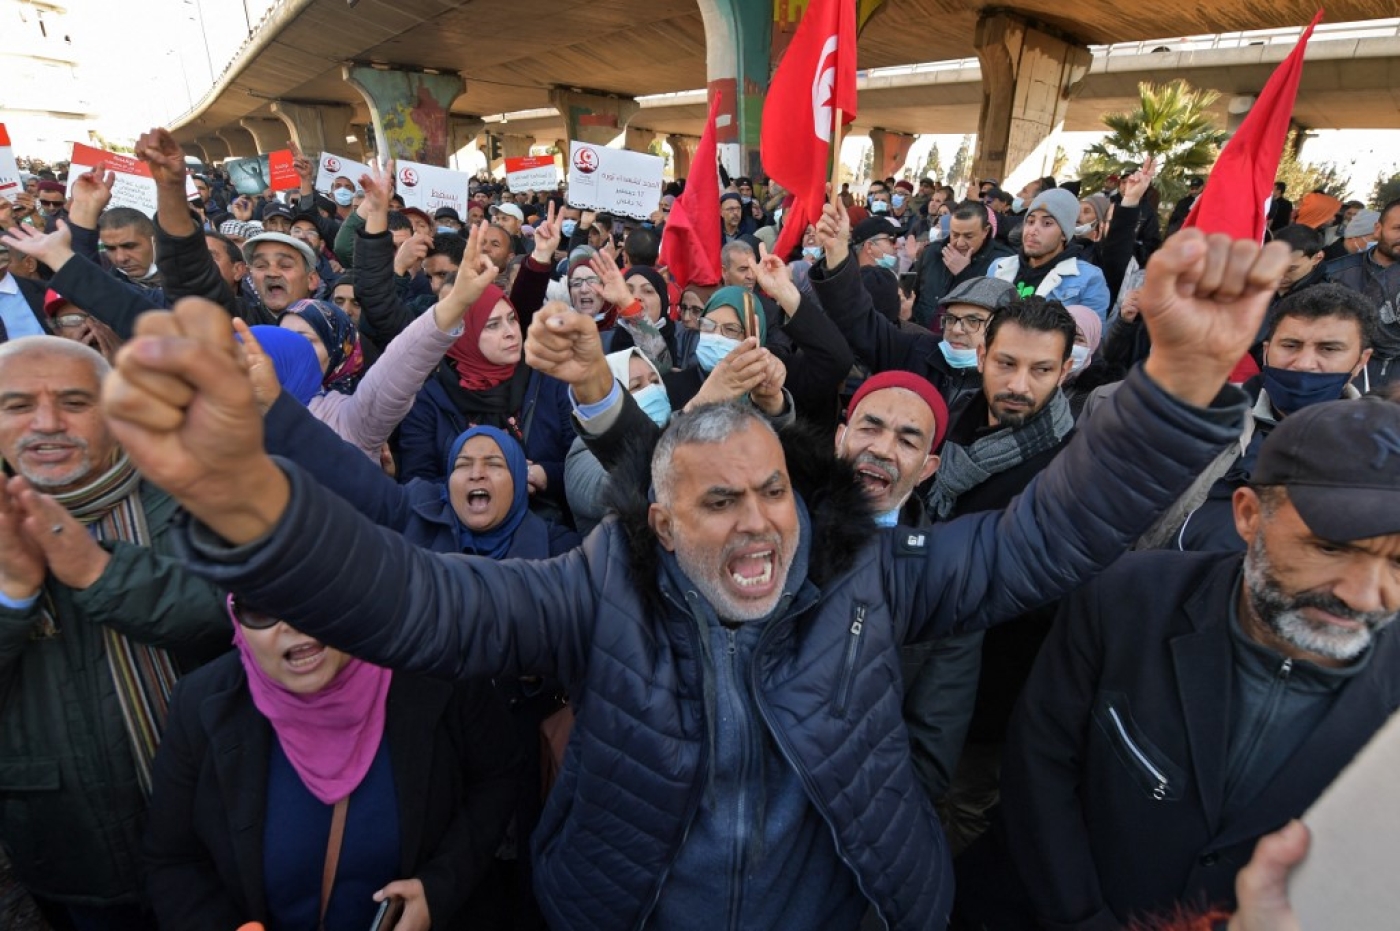 Les Tunisiens protestent contre la décision du président Kais Saied de prolonger la suspension du Parlement, l’accusant de porter un nouveau coup à la démocratie naissante du pays, le 17 décembre 2021 à Tunis (AFP/Fethi Belaid)